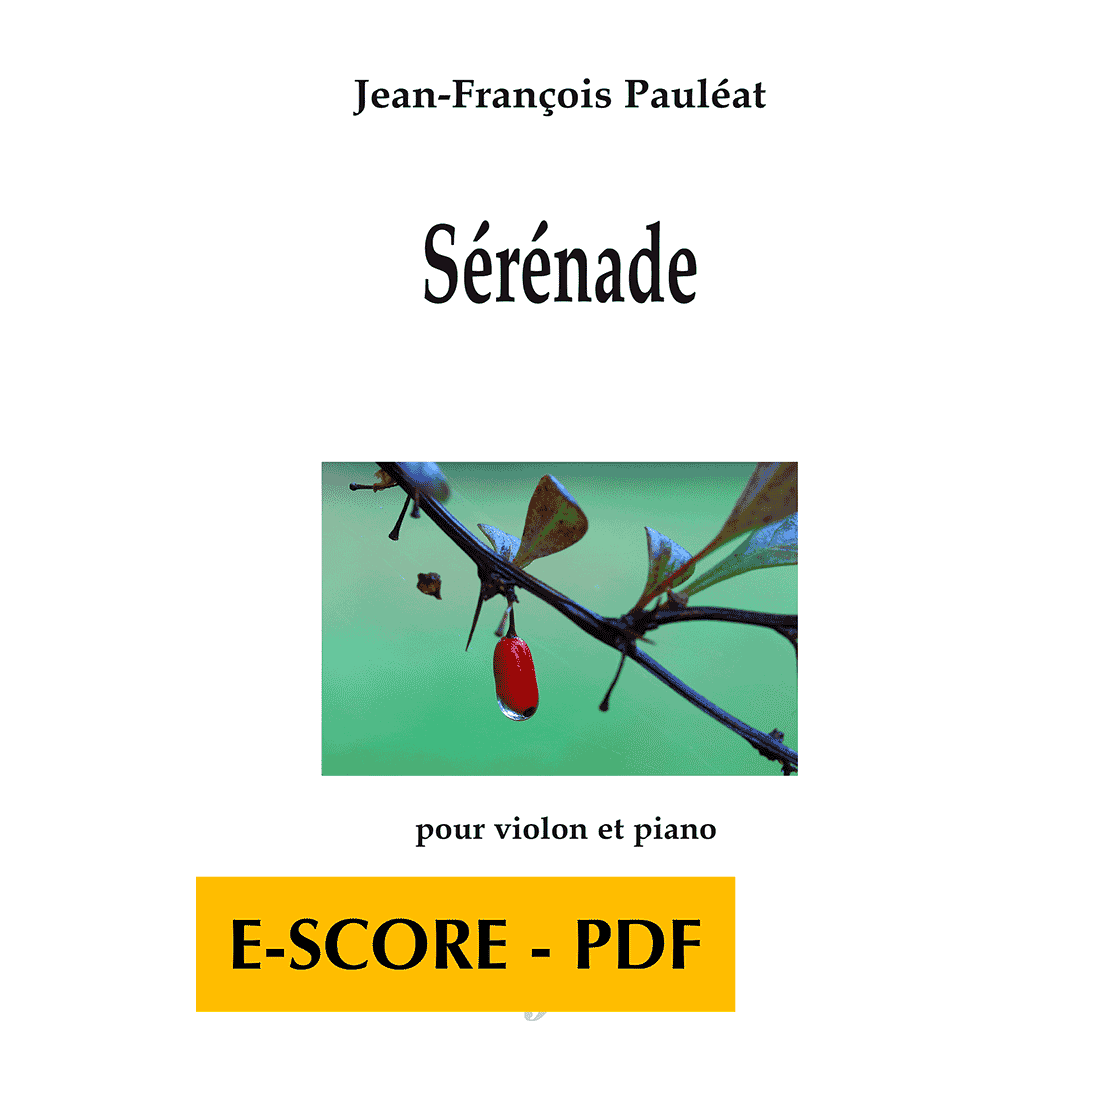 Sérénade for violin and piano - E-score PDF